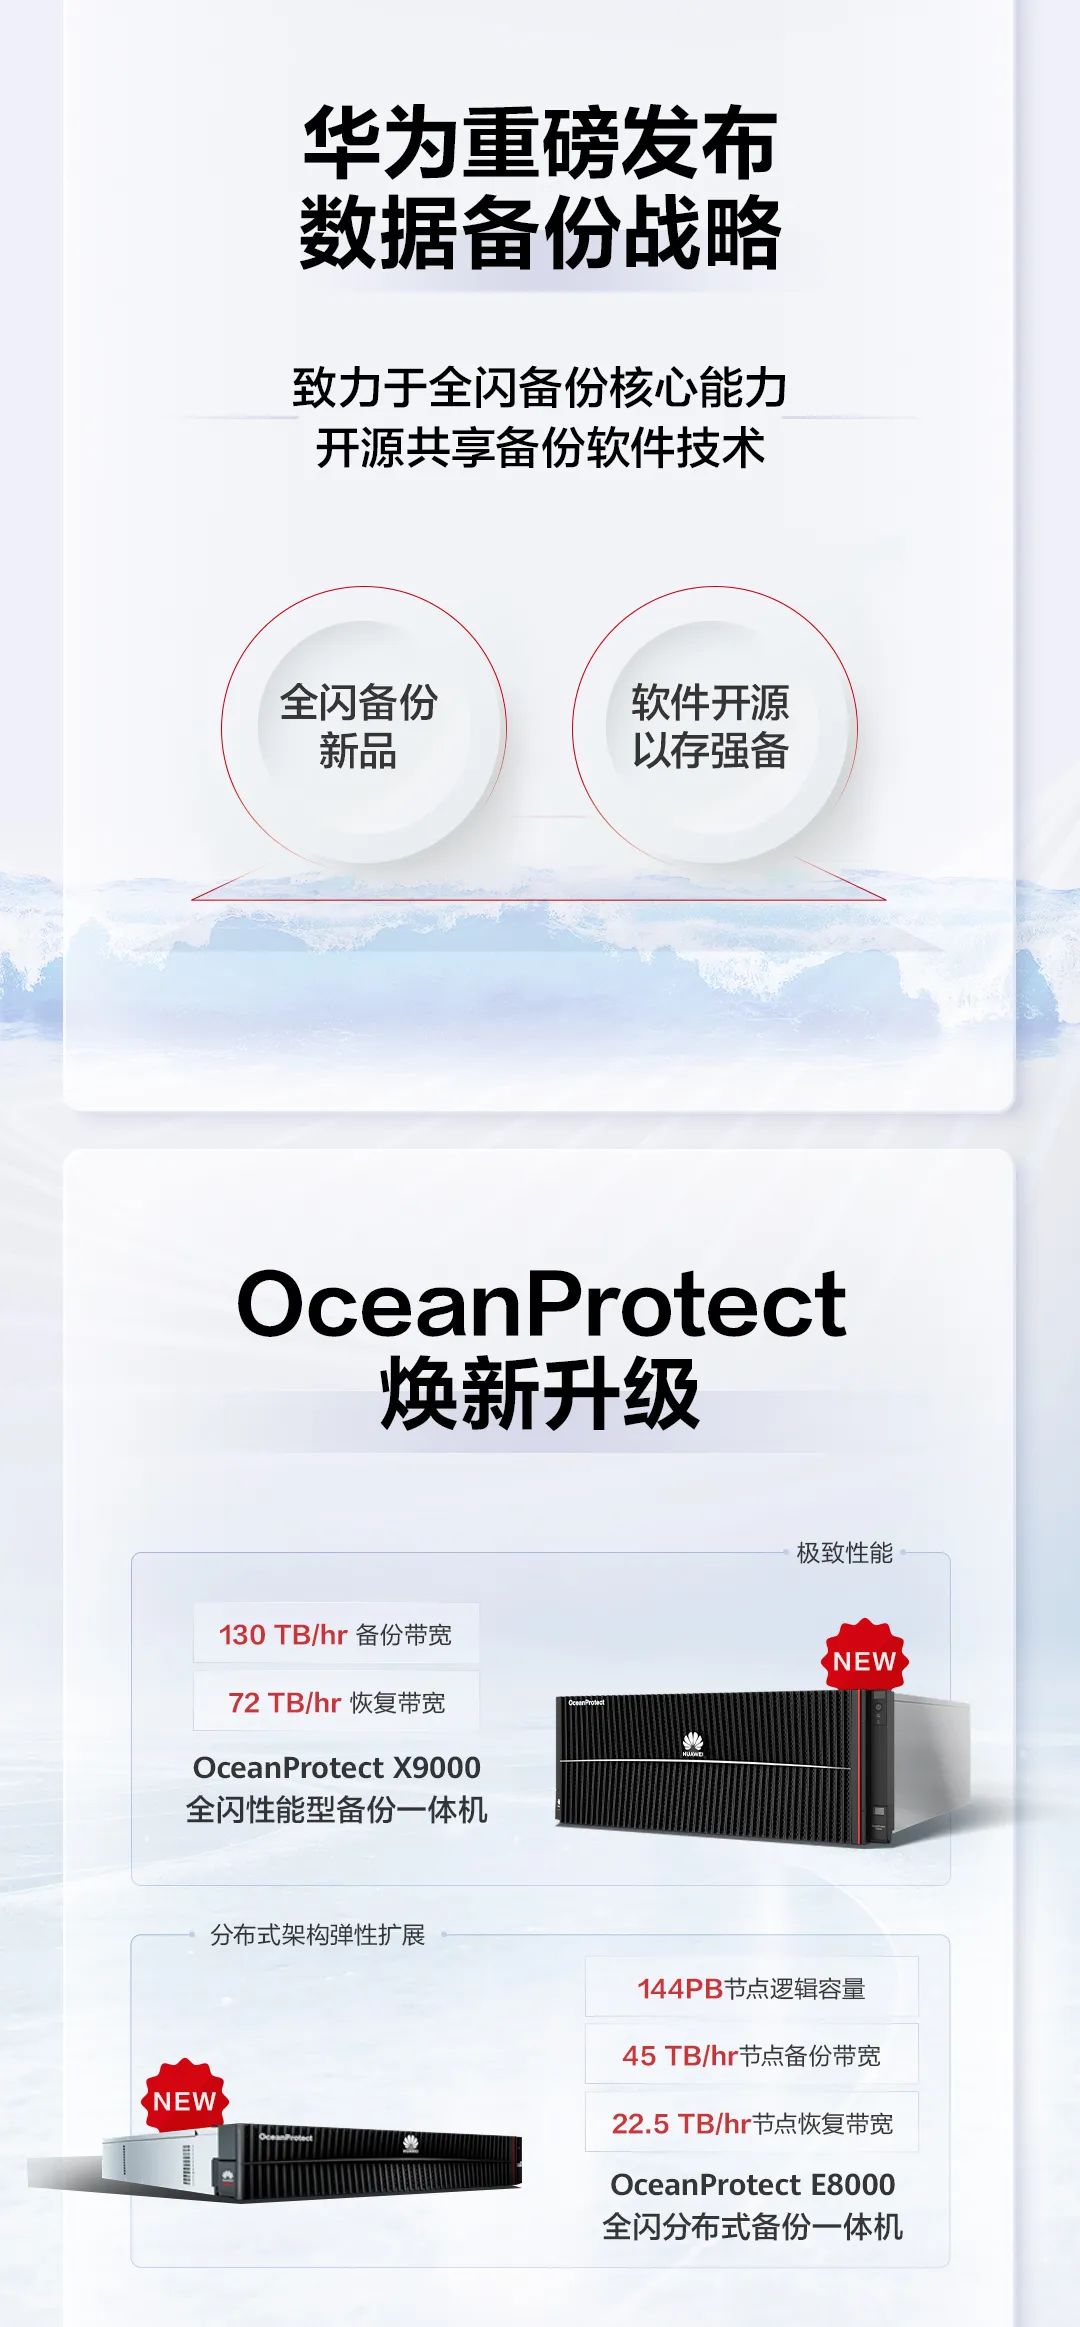 华为发布全闪备份一体机旗舰新品 OceanProtect X9000 / E8000，备份软件开源